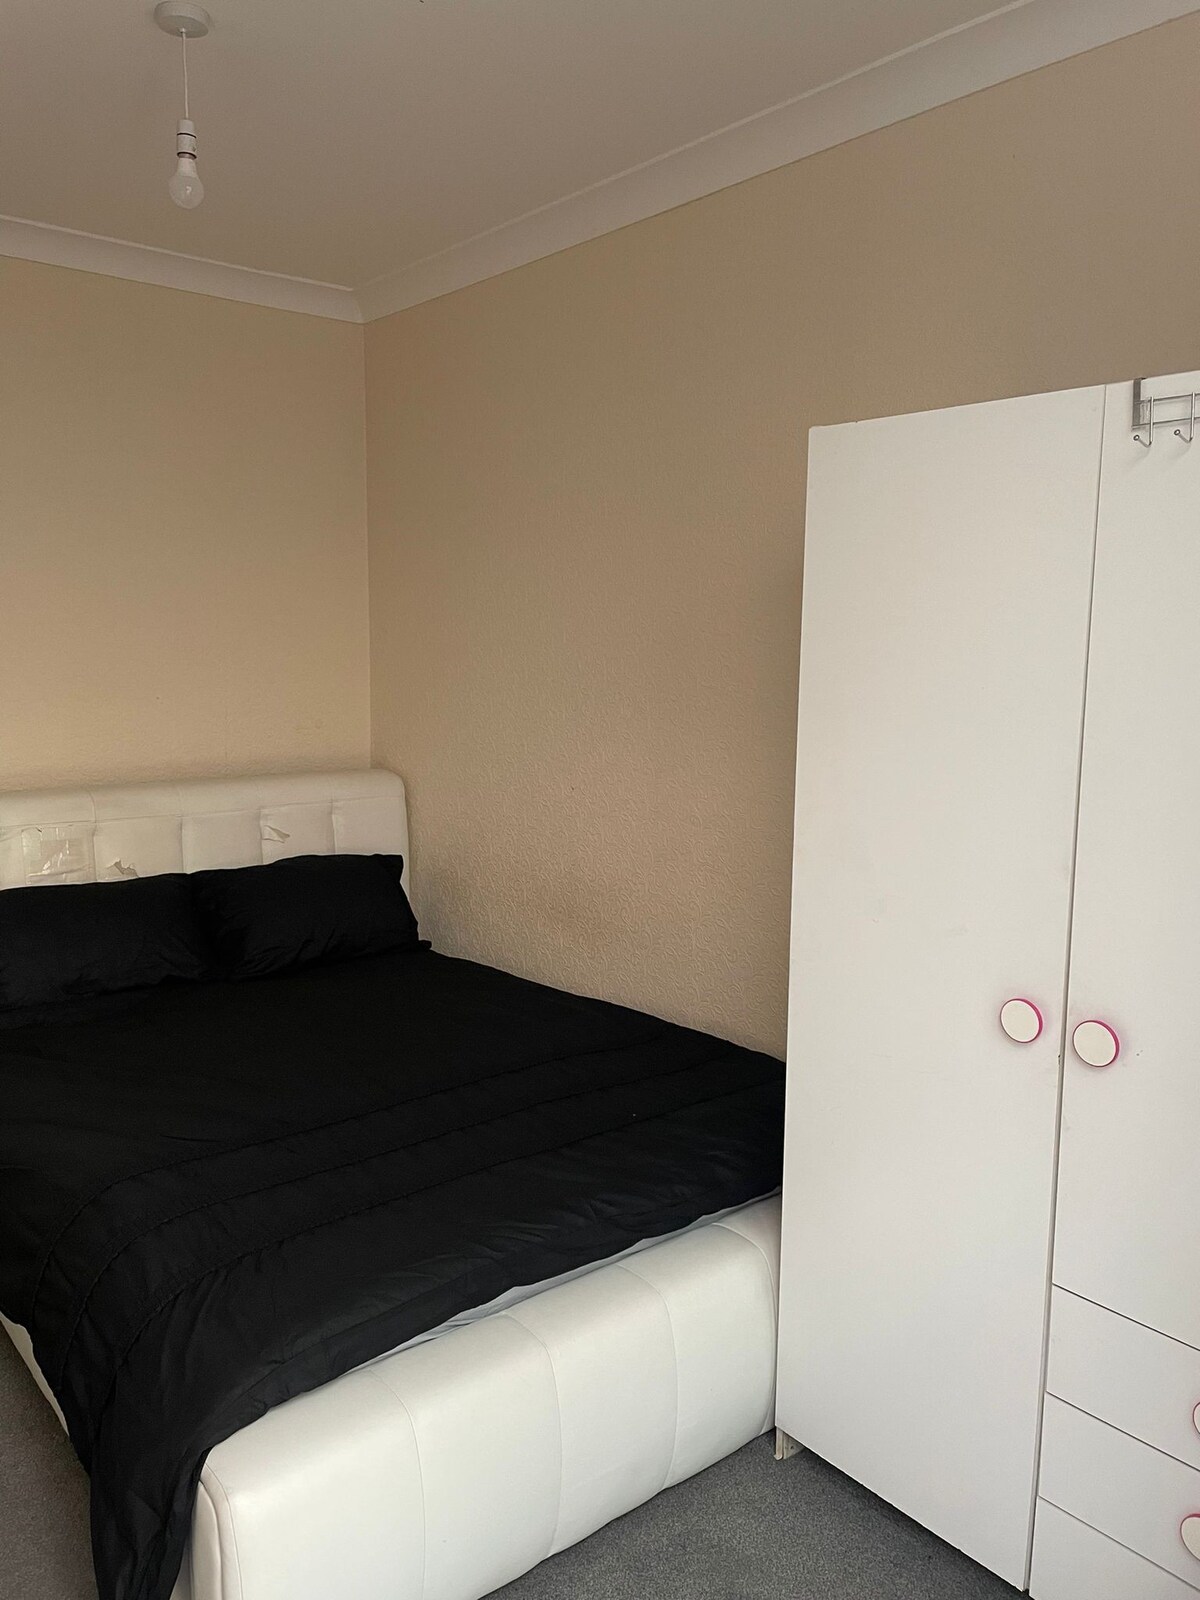 En-suite Double Room £30